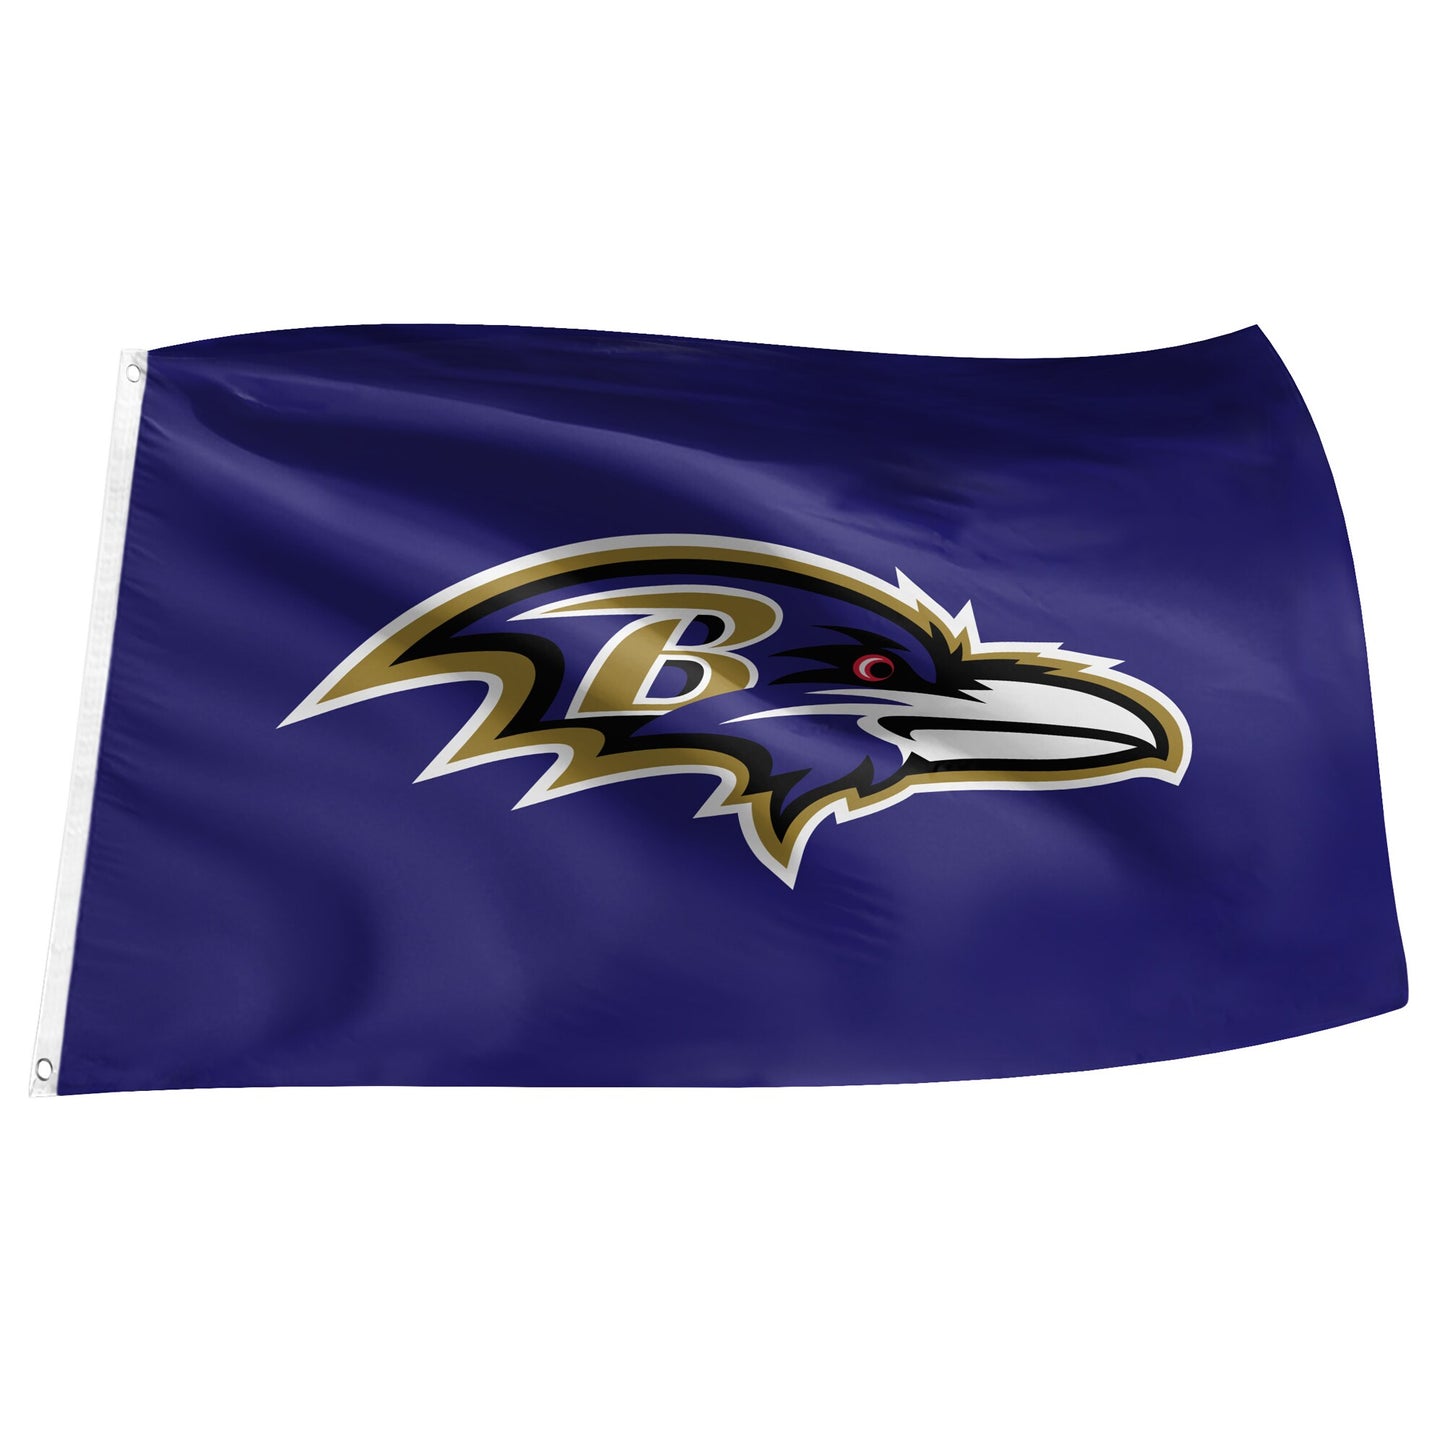 NFL Flag 3x5 Ravens